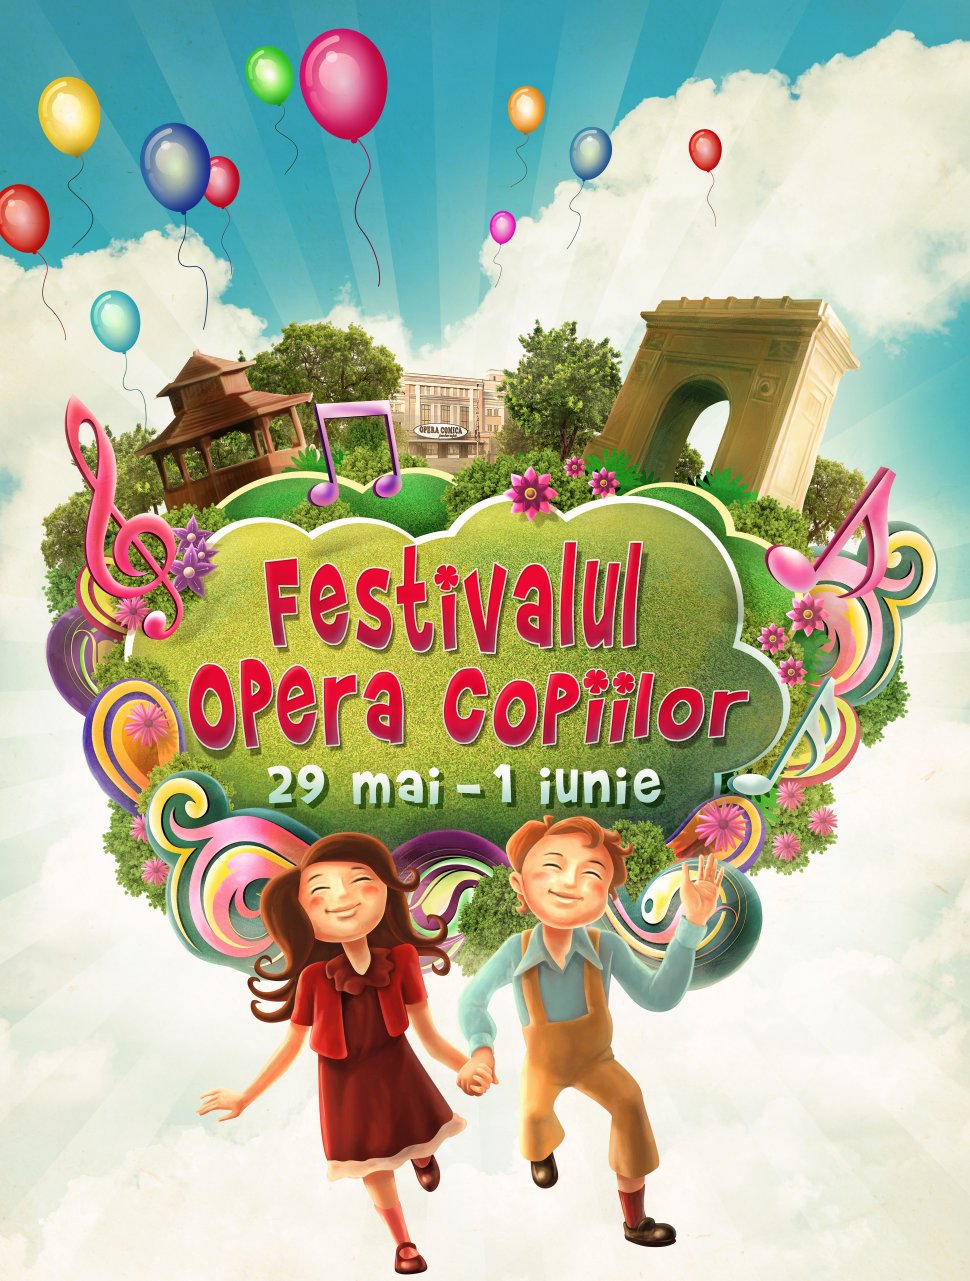 Festivalul “Opera Copiilor” aduce poveștile în aer liber